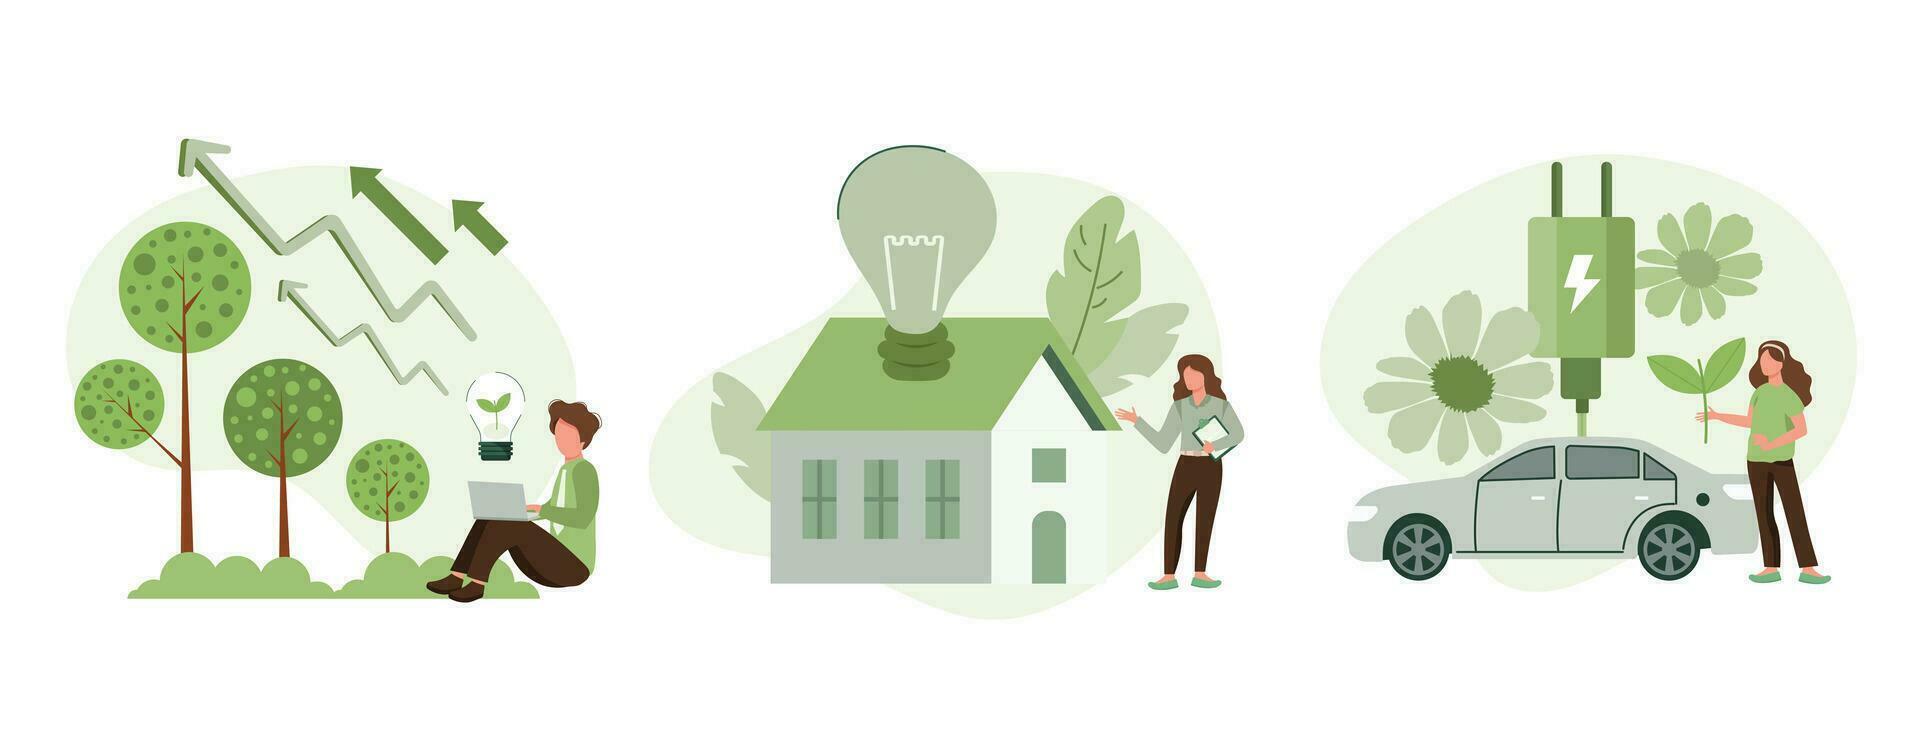 groen energie illustratie set. tekens tonen eco privaat huis, elektrisch auto en groen circulaire economie een uitkering. hernieuwbaar energie concept. vector illustratie.